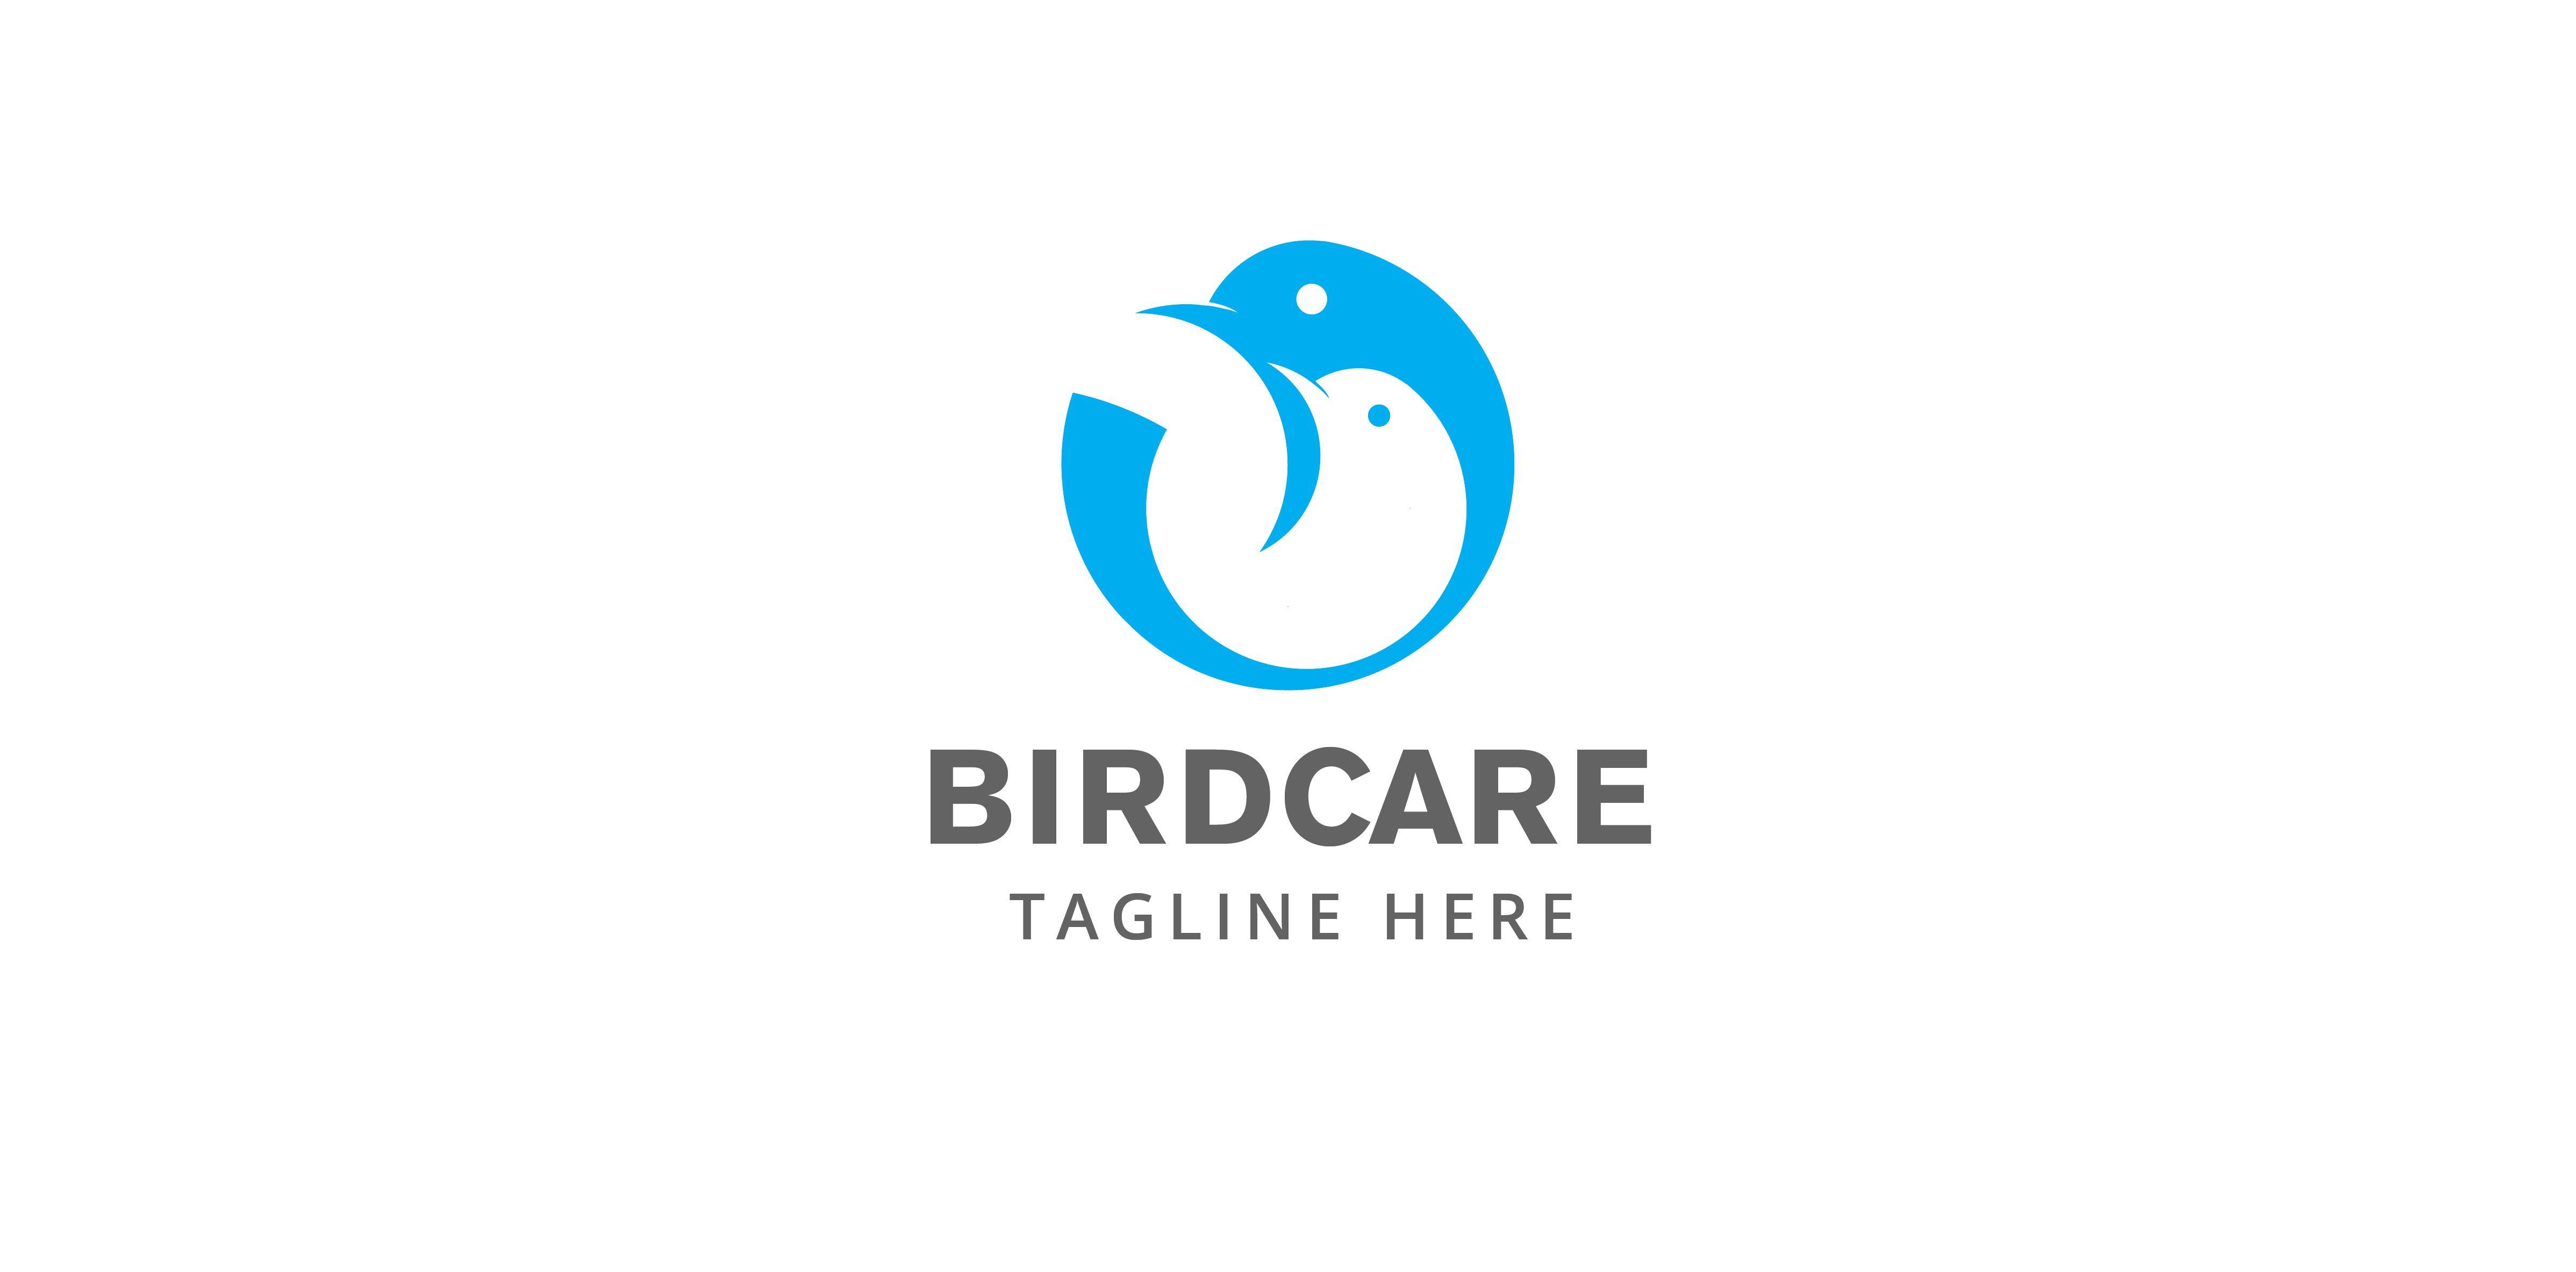 Care Logo - Bird care logo | LogoMoose - Logo Inspiration